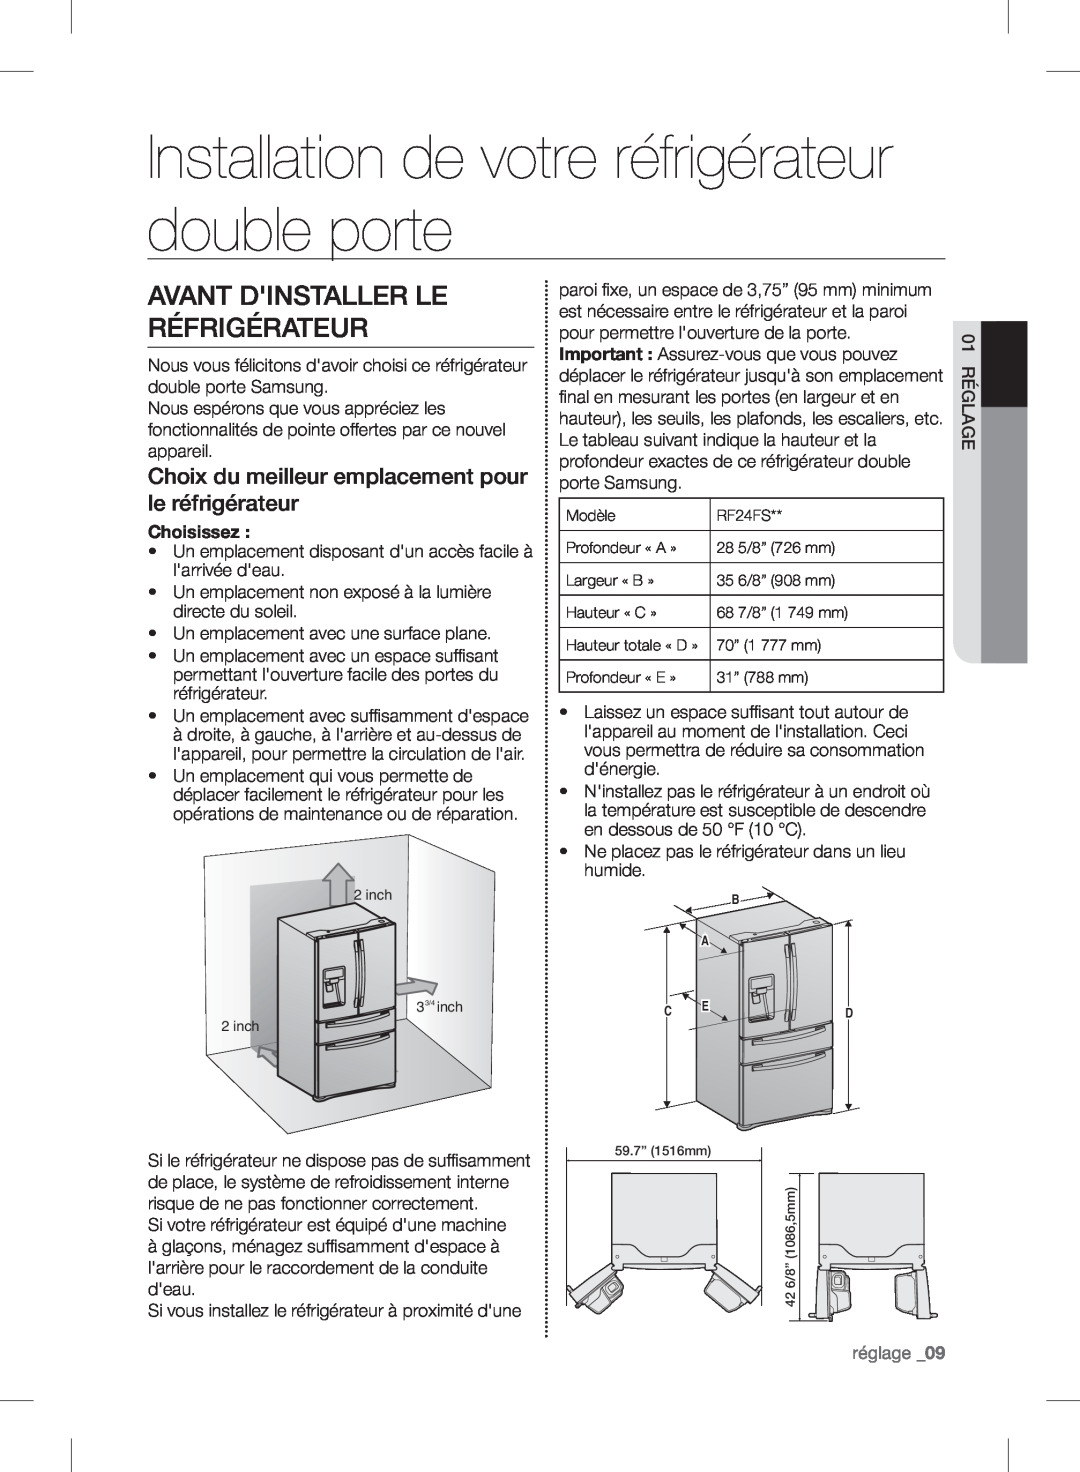 Samsung RF24FSEDBSR Installation de votre réfrigérateur double porte, Avant Dinstaller Le Réfrigérateur, réglage _09 